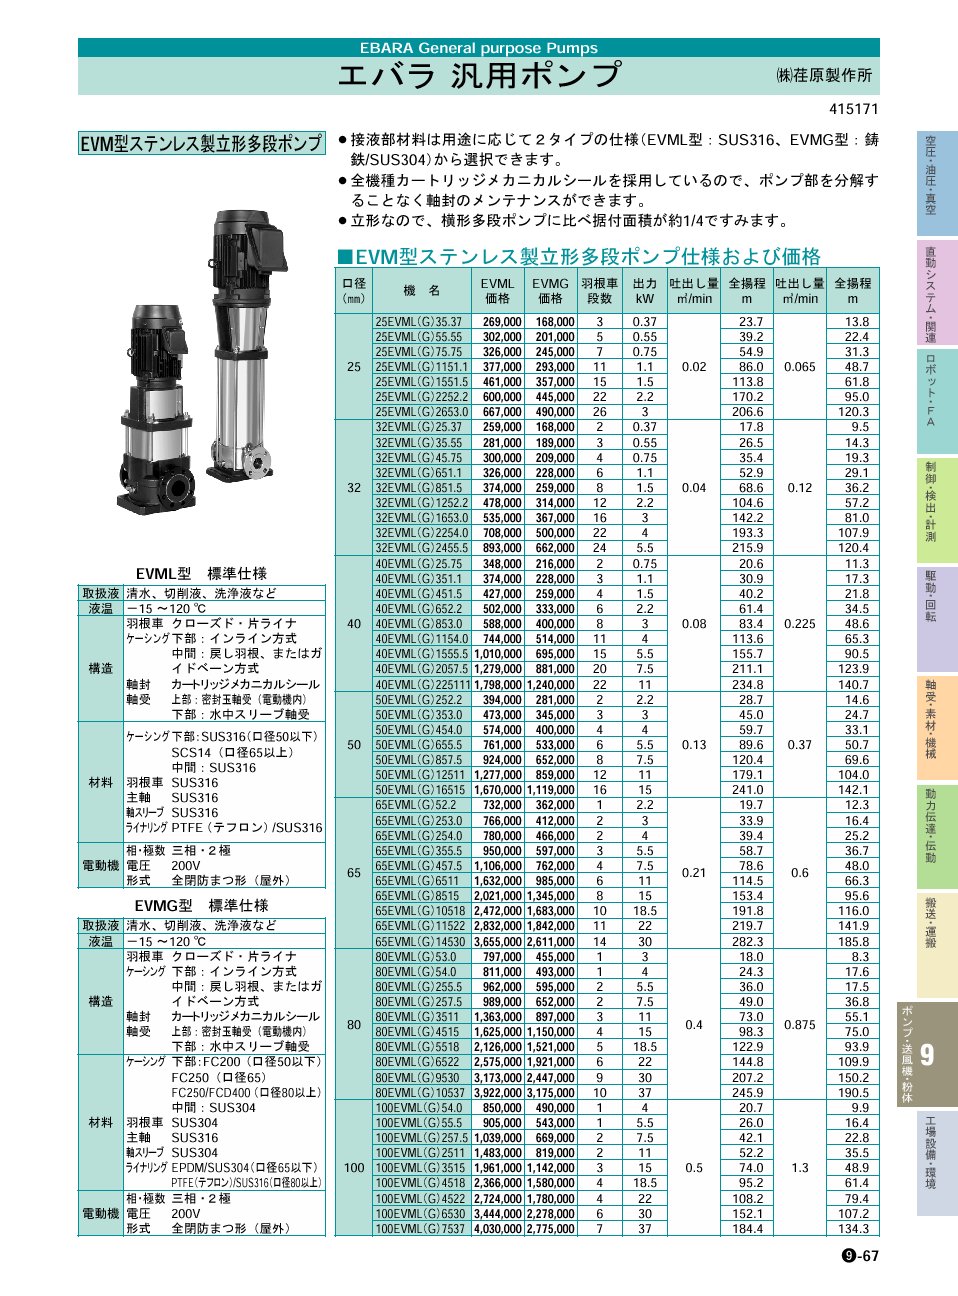 クーラント エバラ EVMS型ステンレス製立型多段ポンプ 60Hz 口径50mm 50EVMS263.0 1台 134-8658【代引決済不可